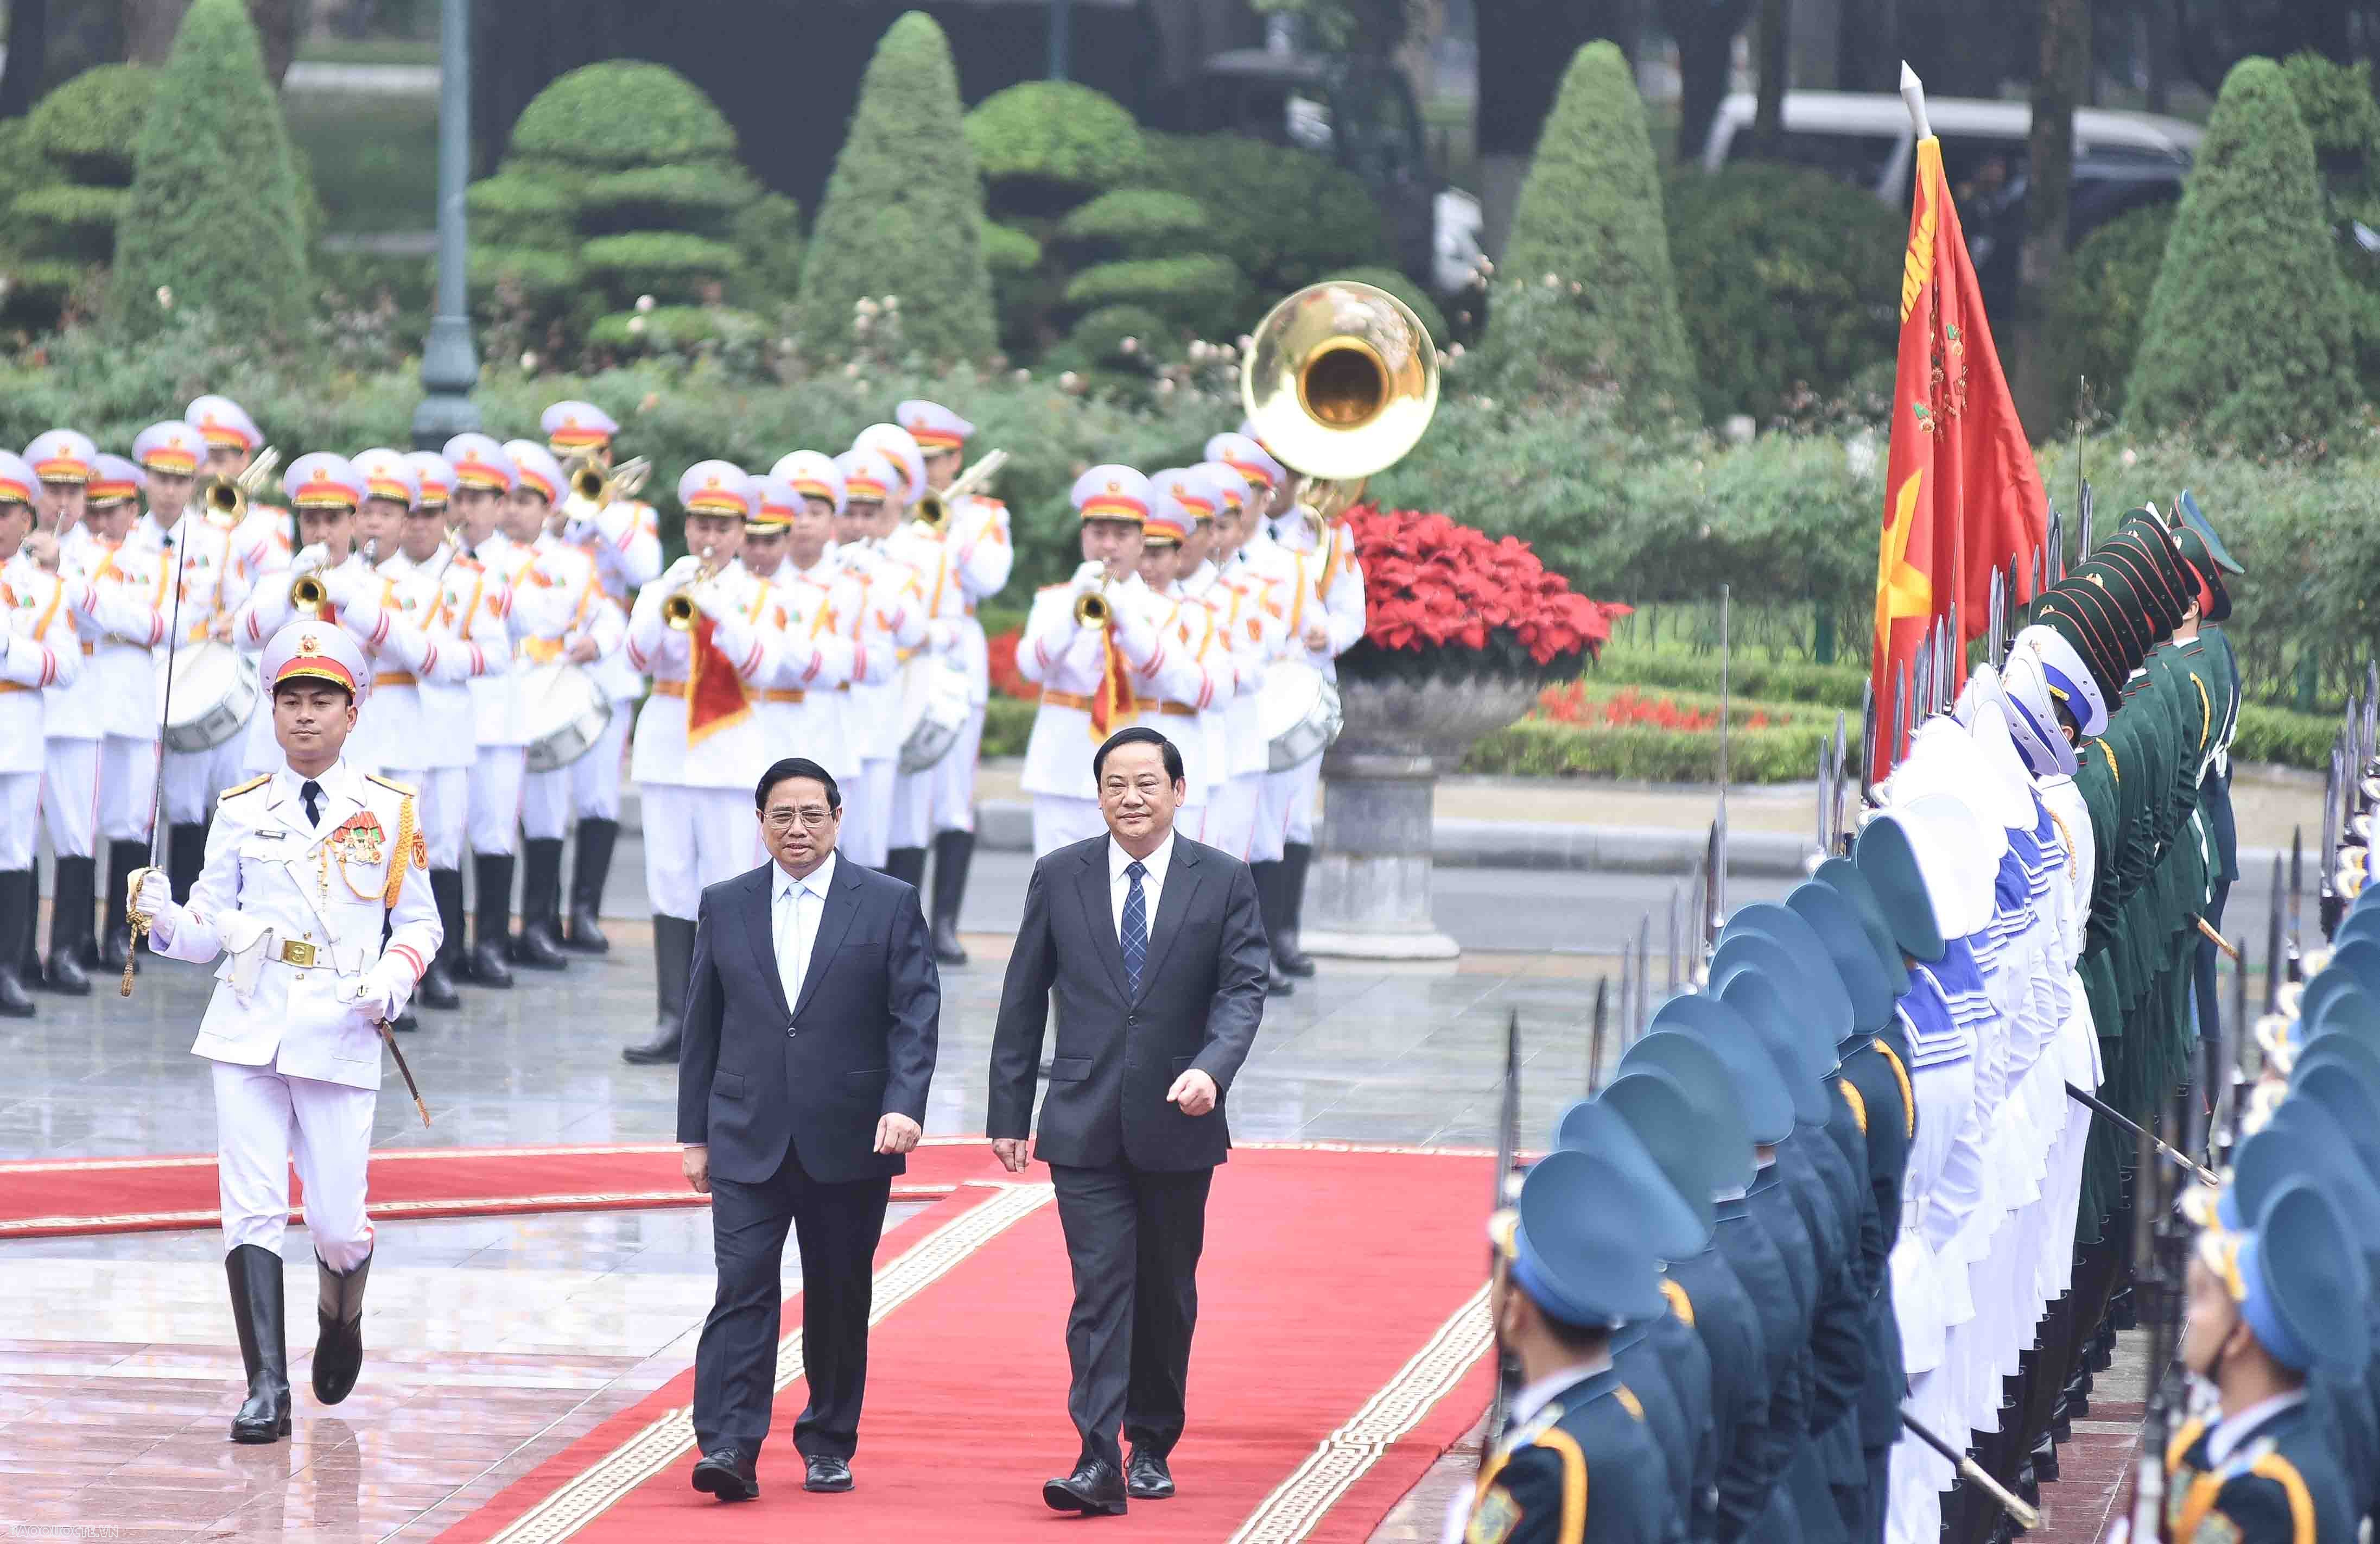 Thủ tướng Phạm Minh Chính và Thủ tướng Sonexay Siphandone đã có cuộc gặp nhân dịp dự Hội nghị cấp cao ASEAN - Hội đồng Hợp tác Vùng Vịnh (GCC) tại Saudi Arabia hồi tháng 10.